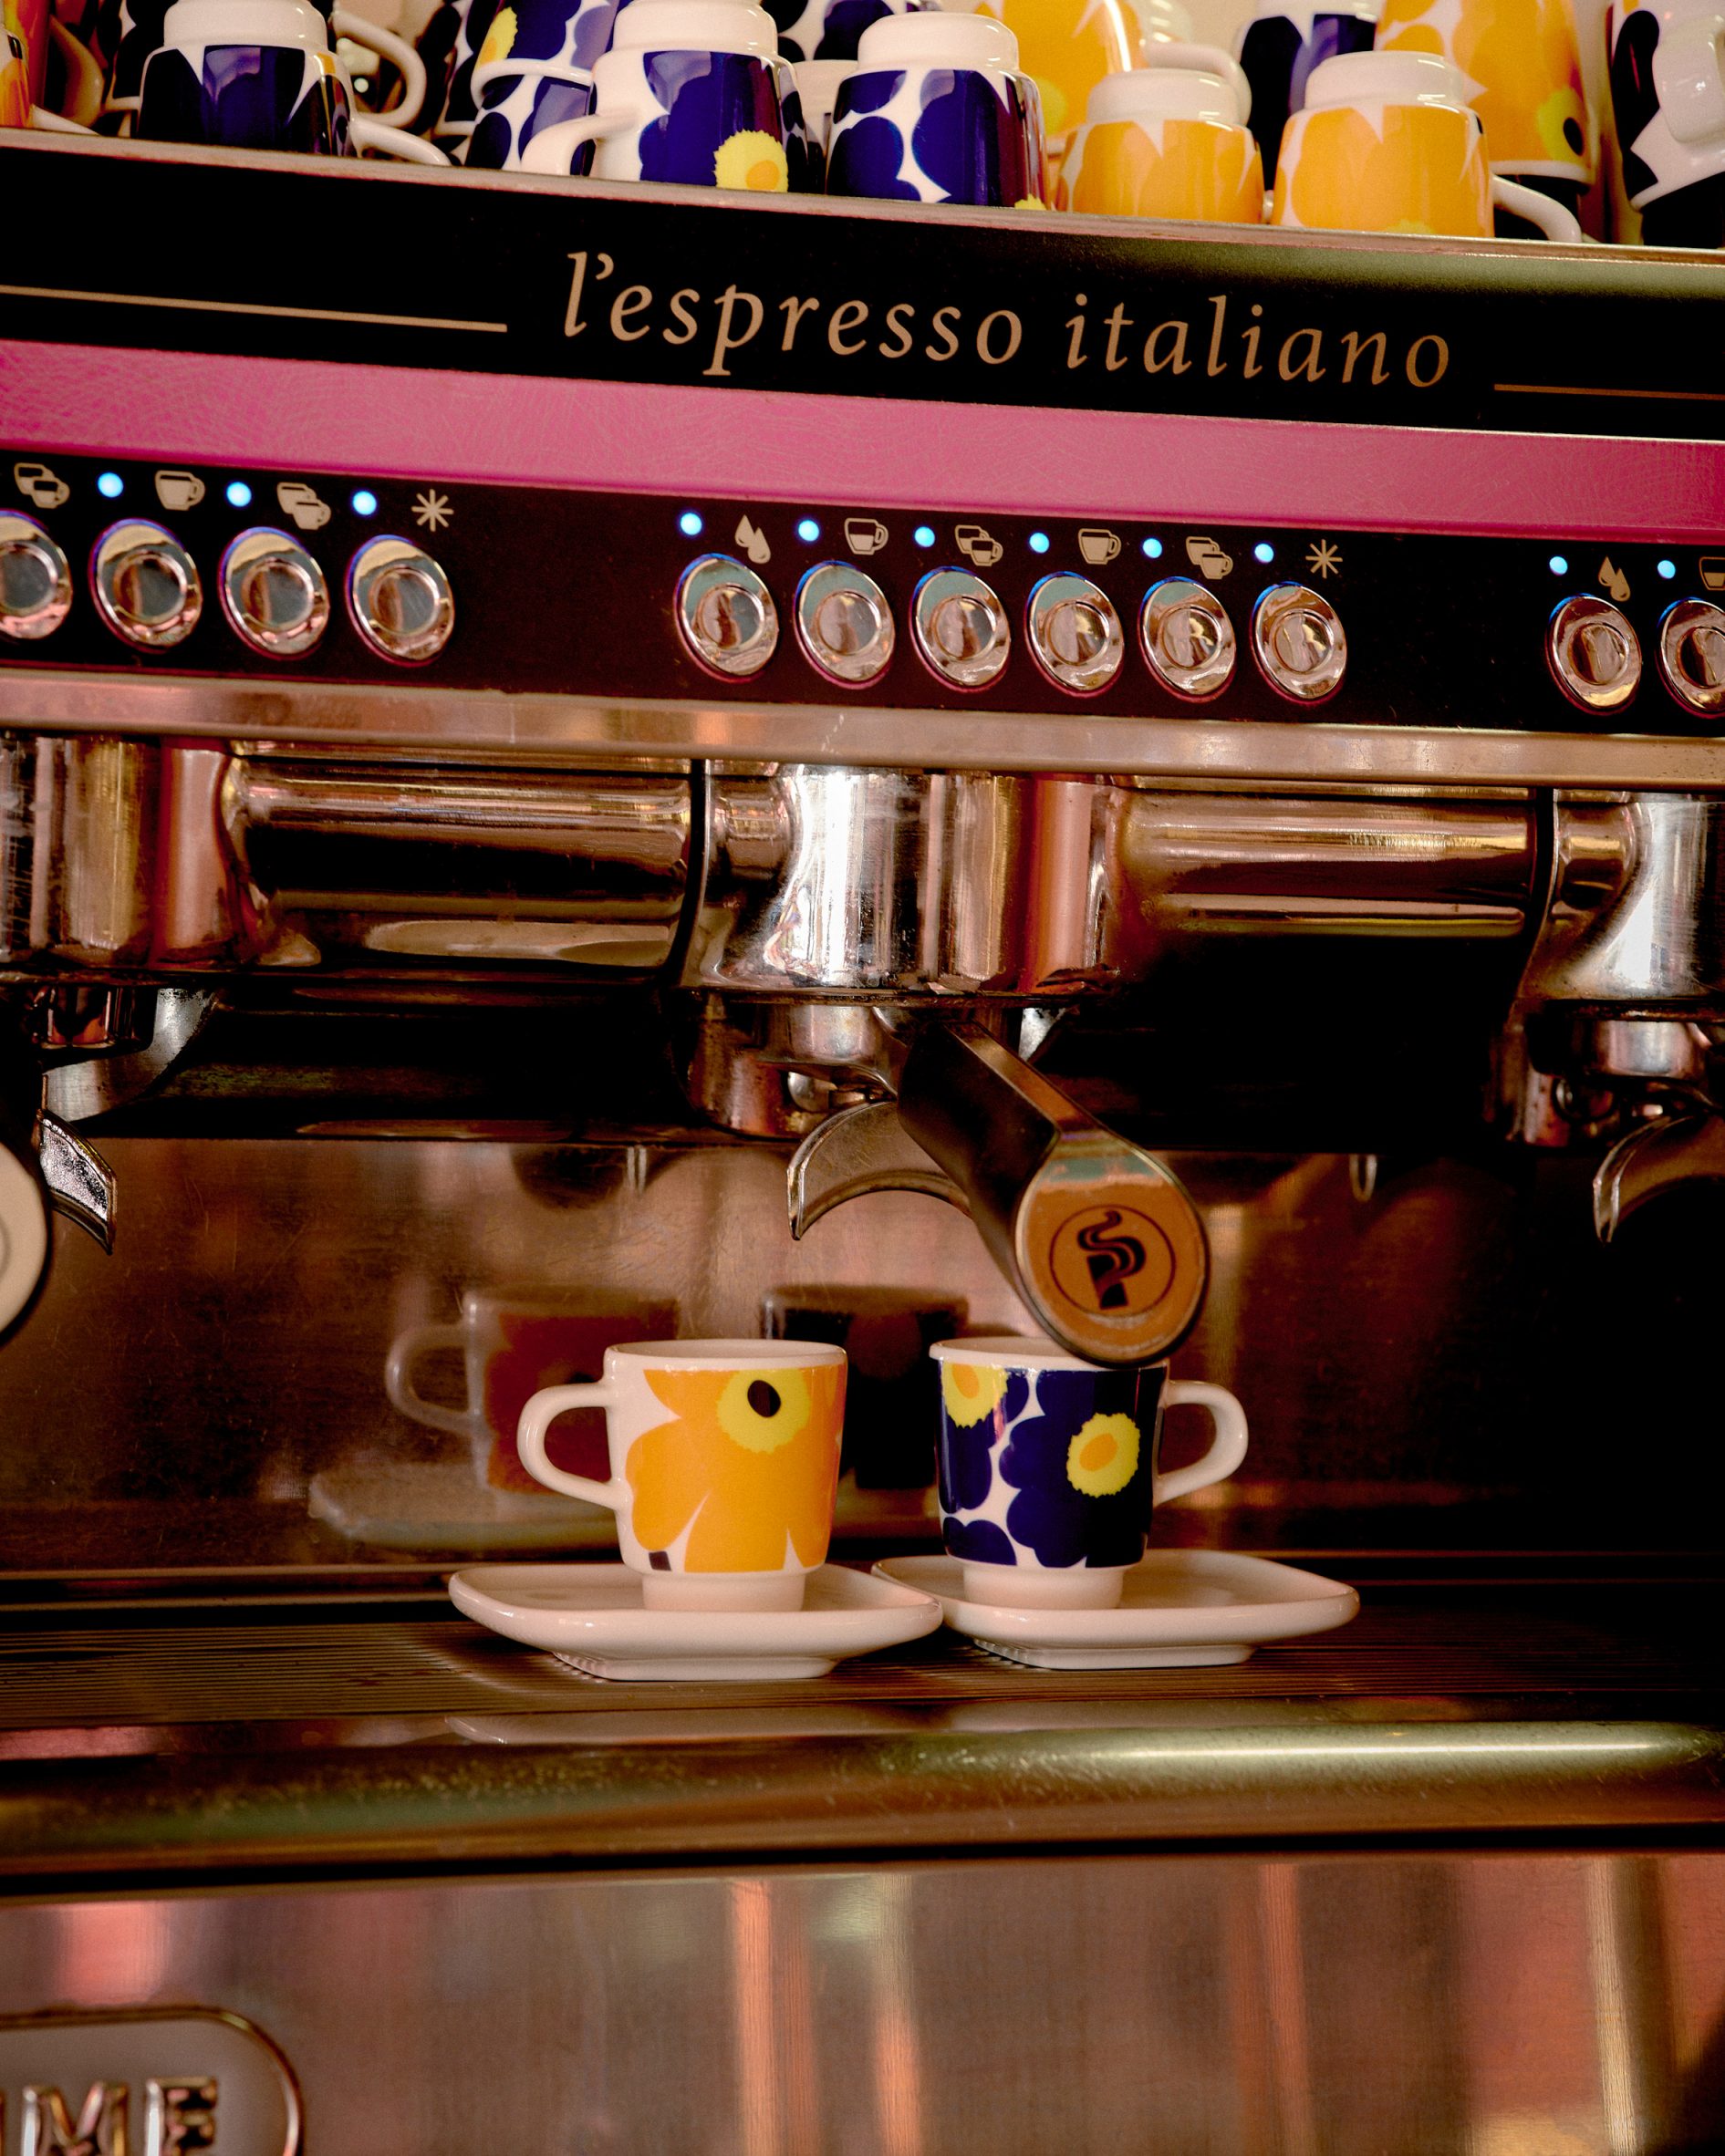 Marimekko patterned espresso cups